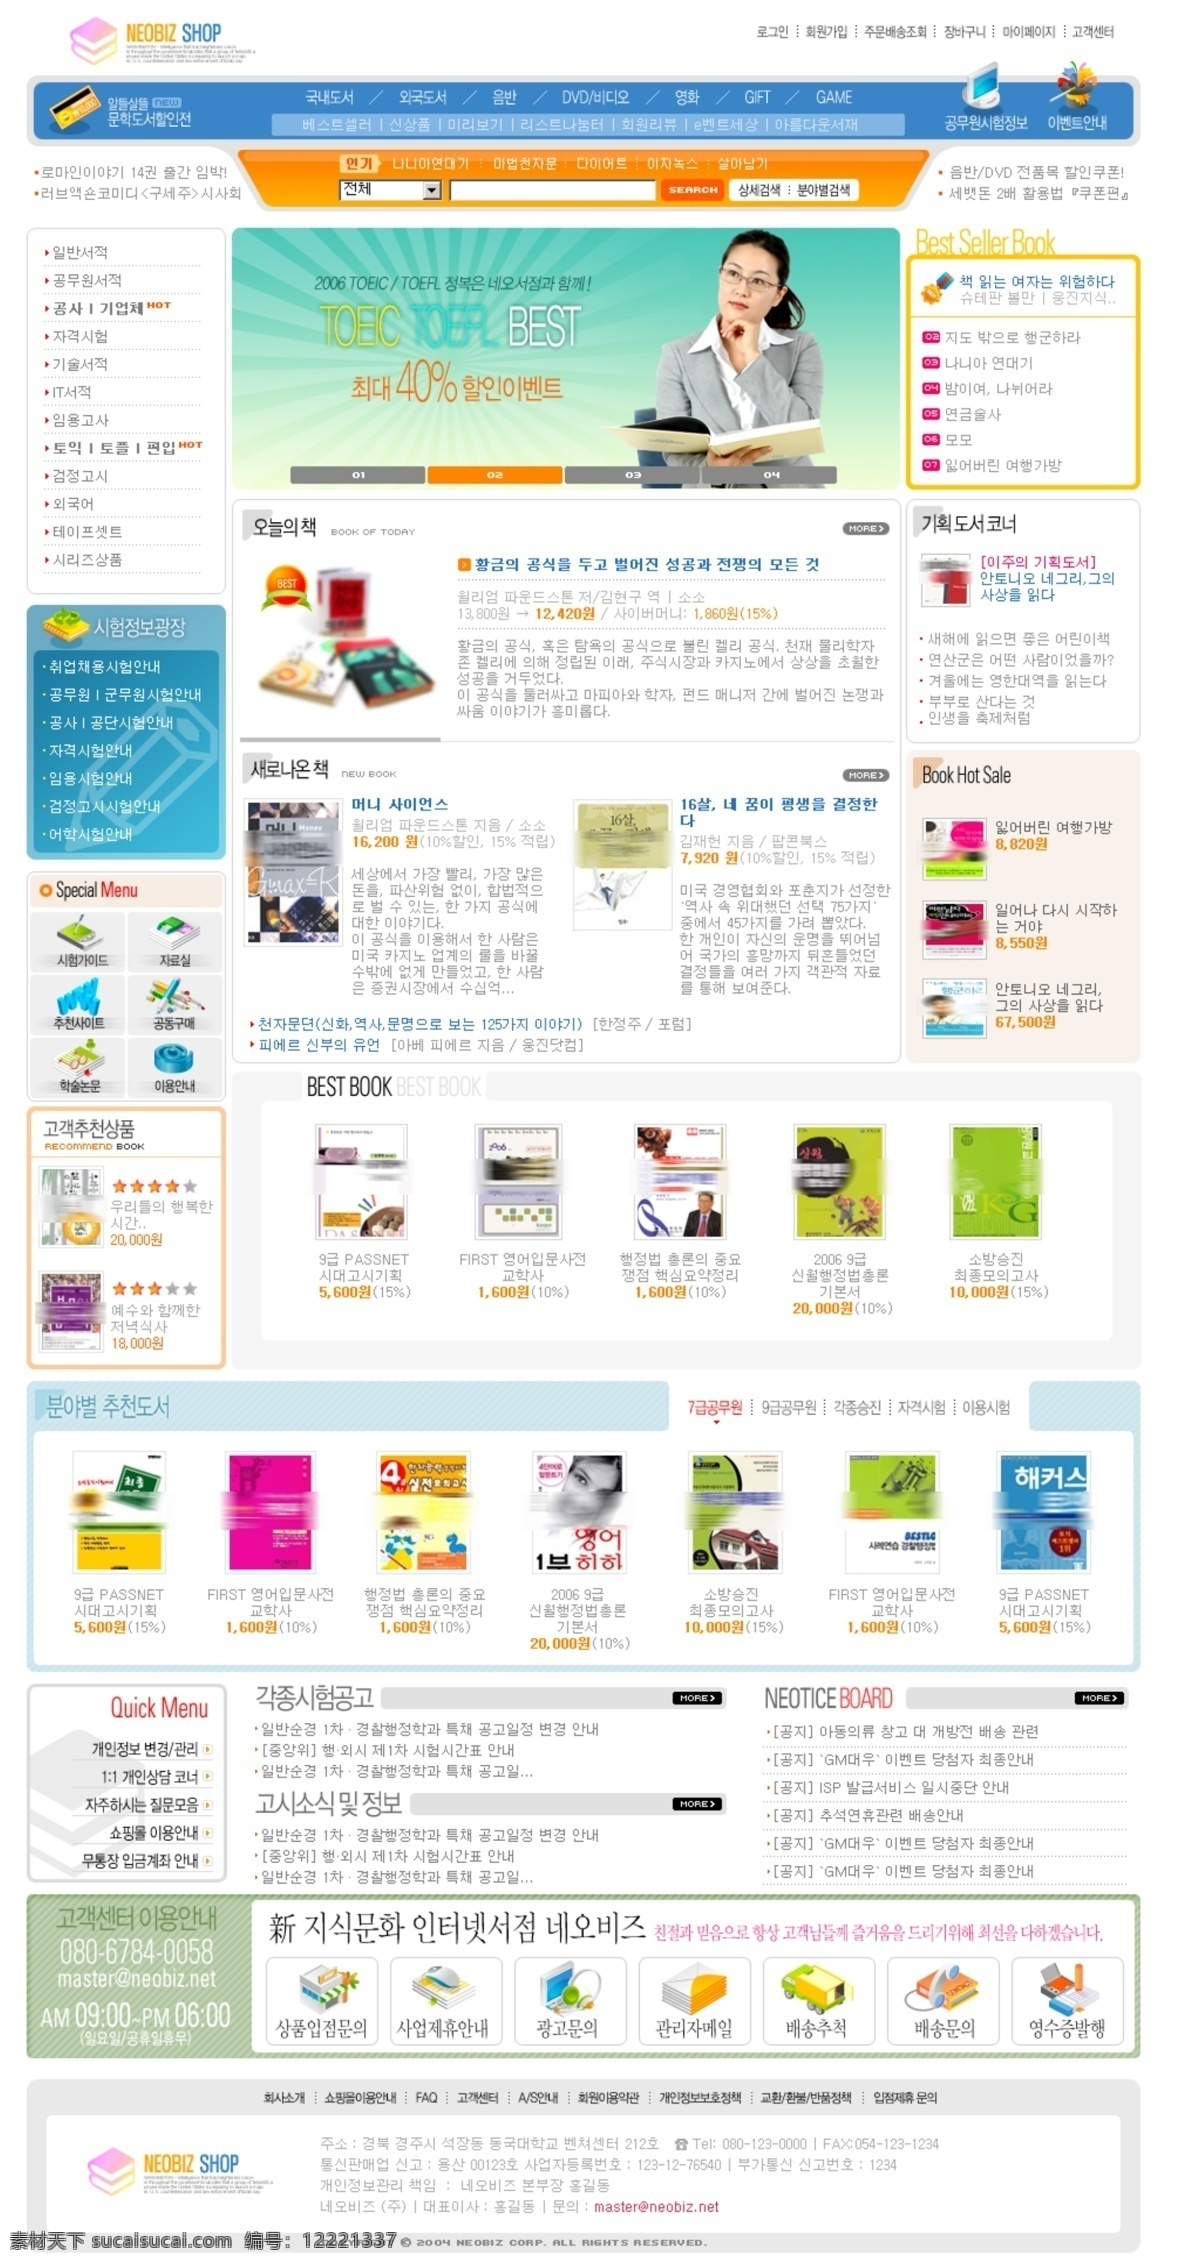 韩国 网上书店 页 网页模板 韩国网页模板 书店网页模板 白色